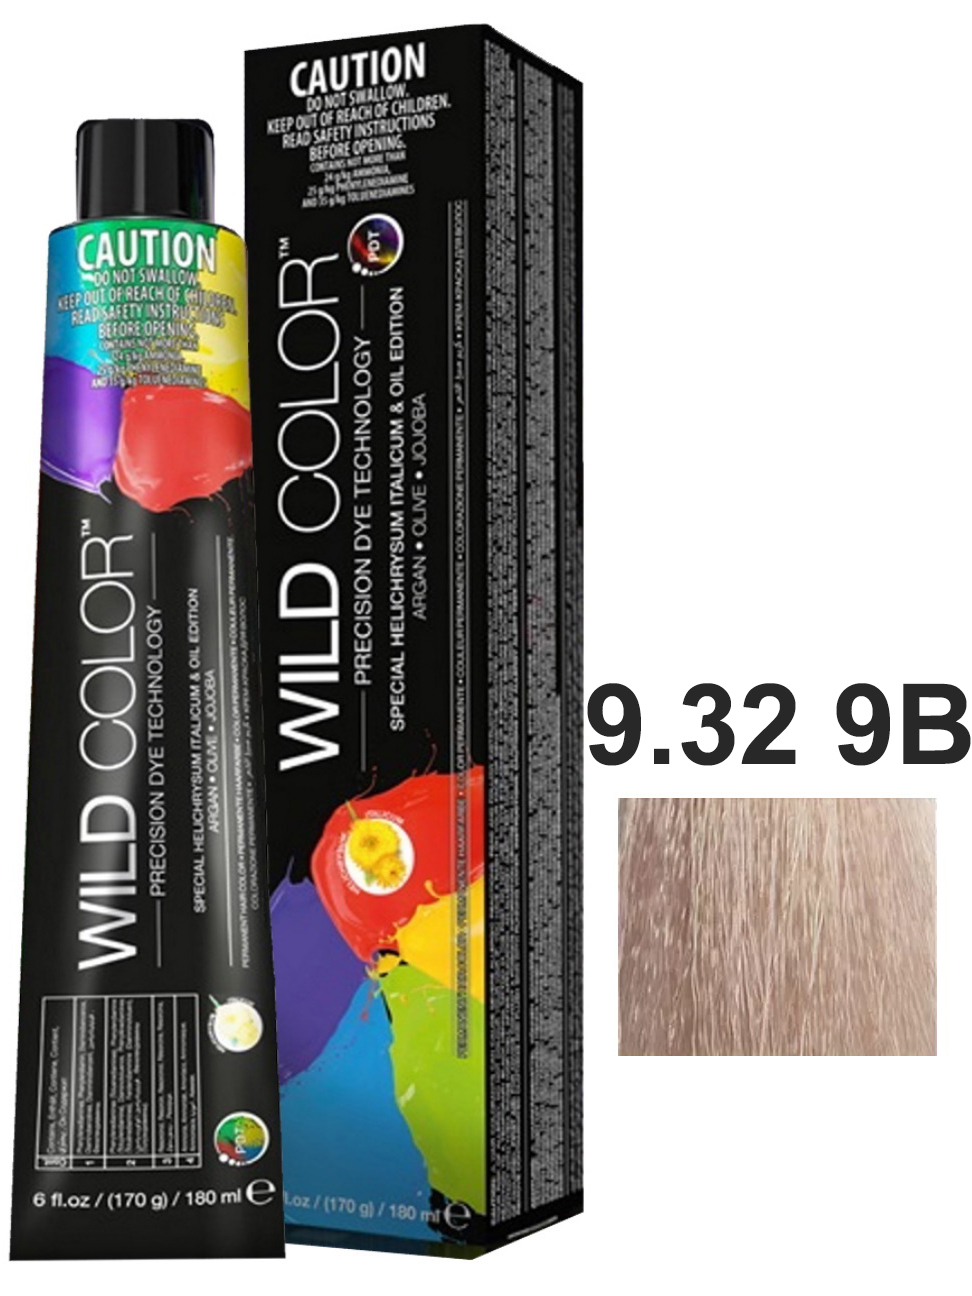 Крем-краска для волос WildColor PERMANENT COLOR 9.32 9B очень светлый блонд бежевый 180 мл краска для волос wildcolor 5 32 5b светло бежевый коричневый 180 мл